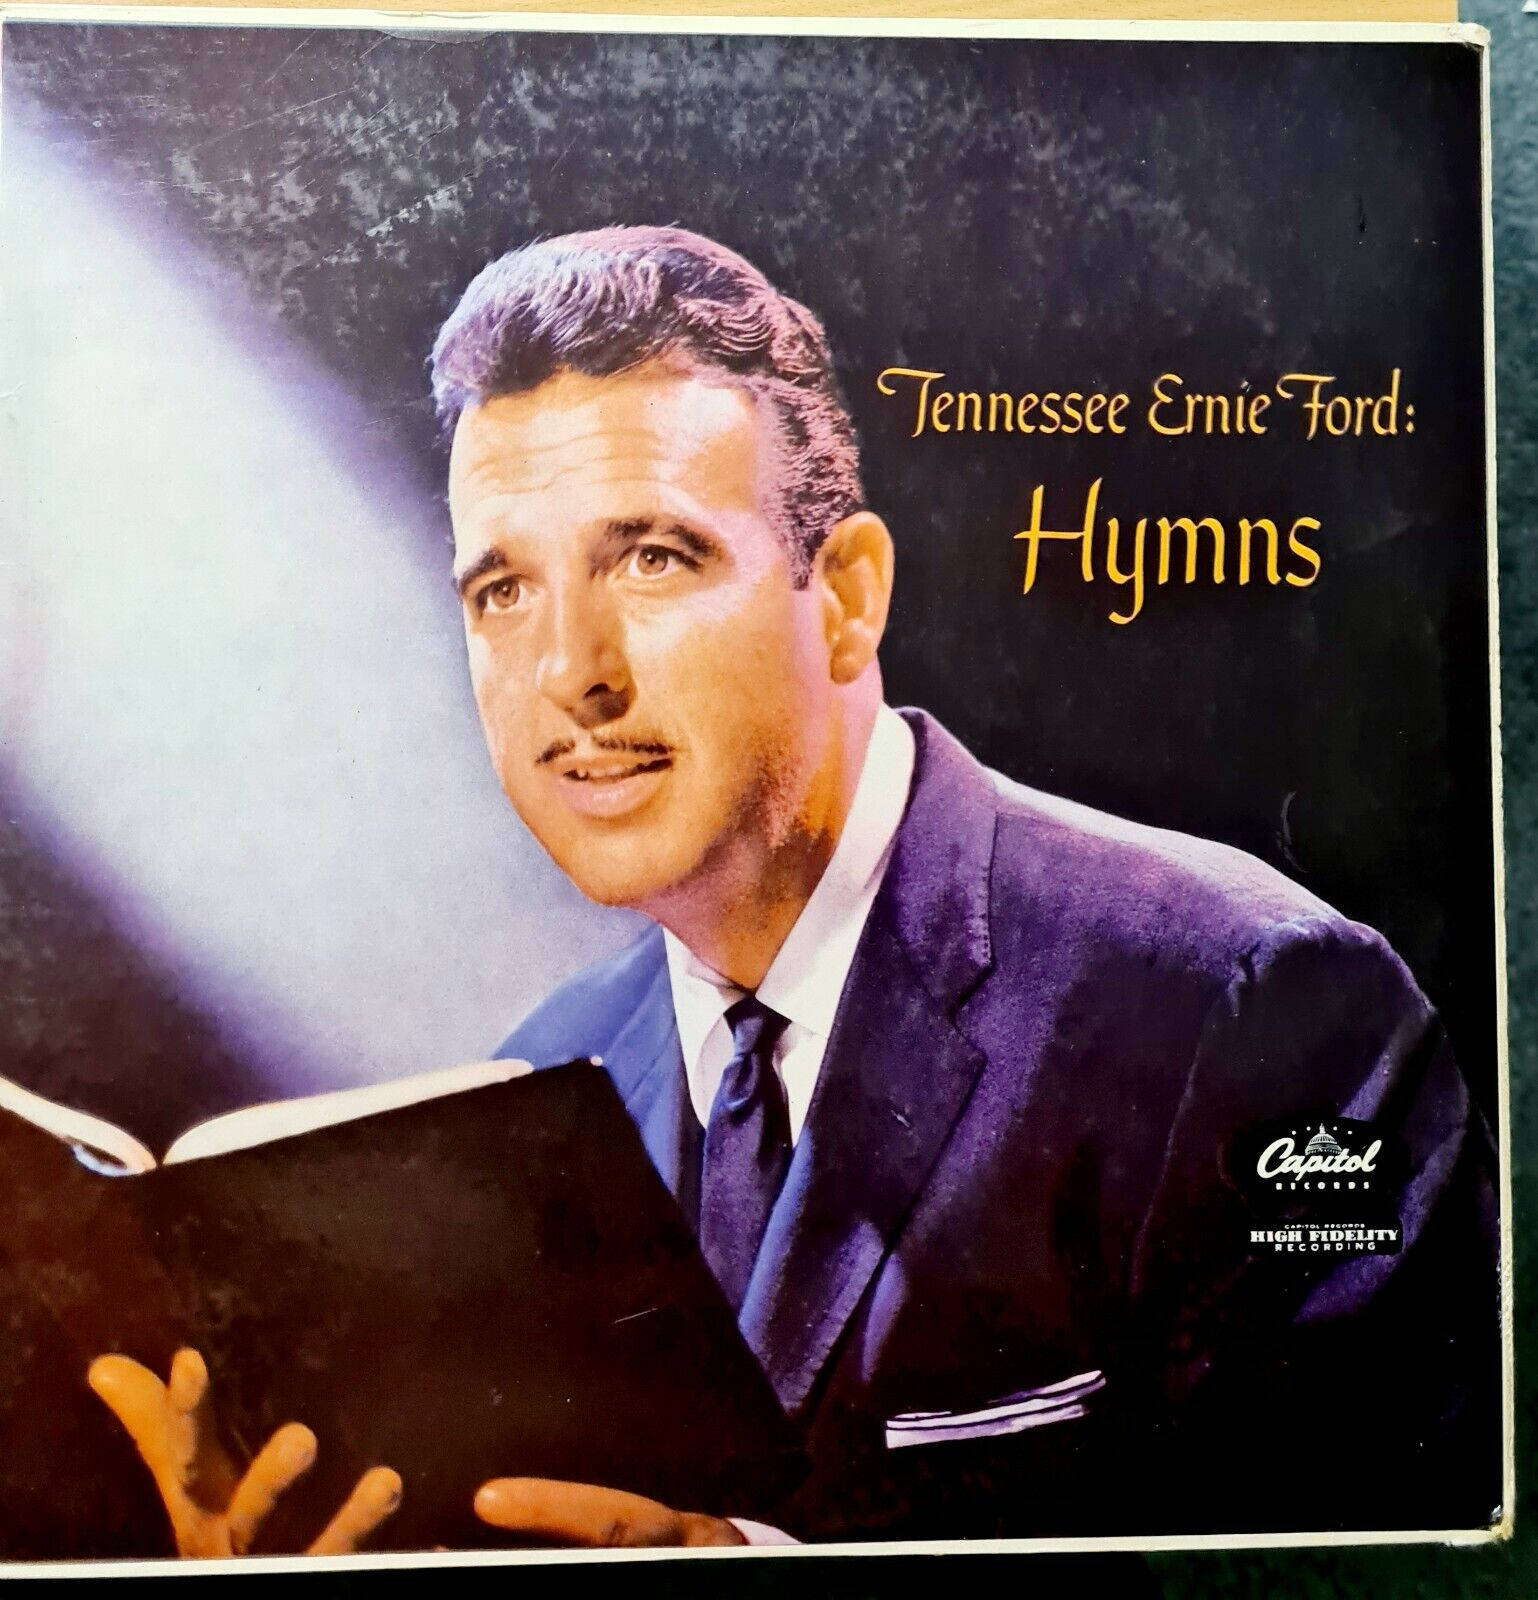 Tennesseeernie Ford Gospel Hymns Album - Tennessee Ernie Ford Gospel Hymnen Album Wallpaper